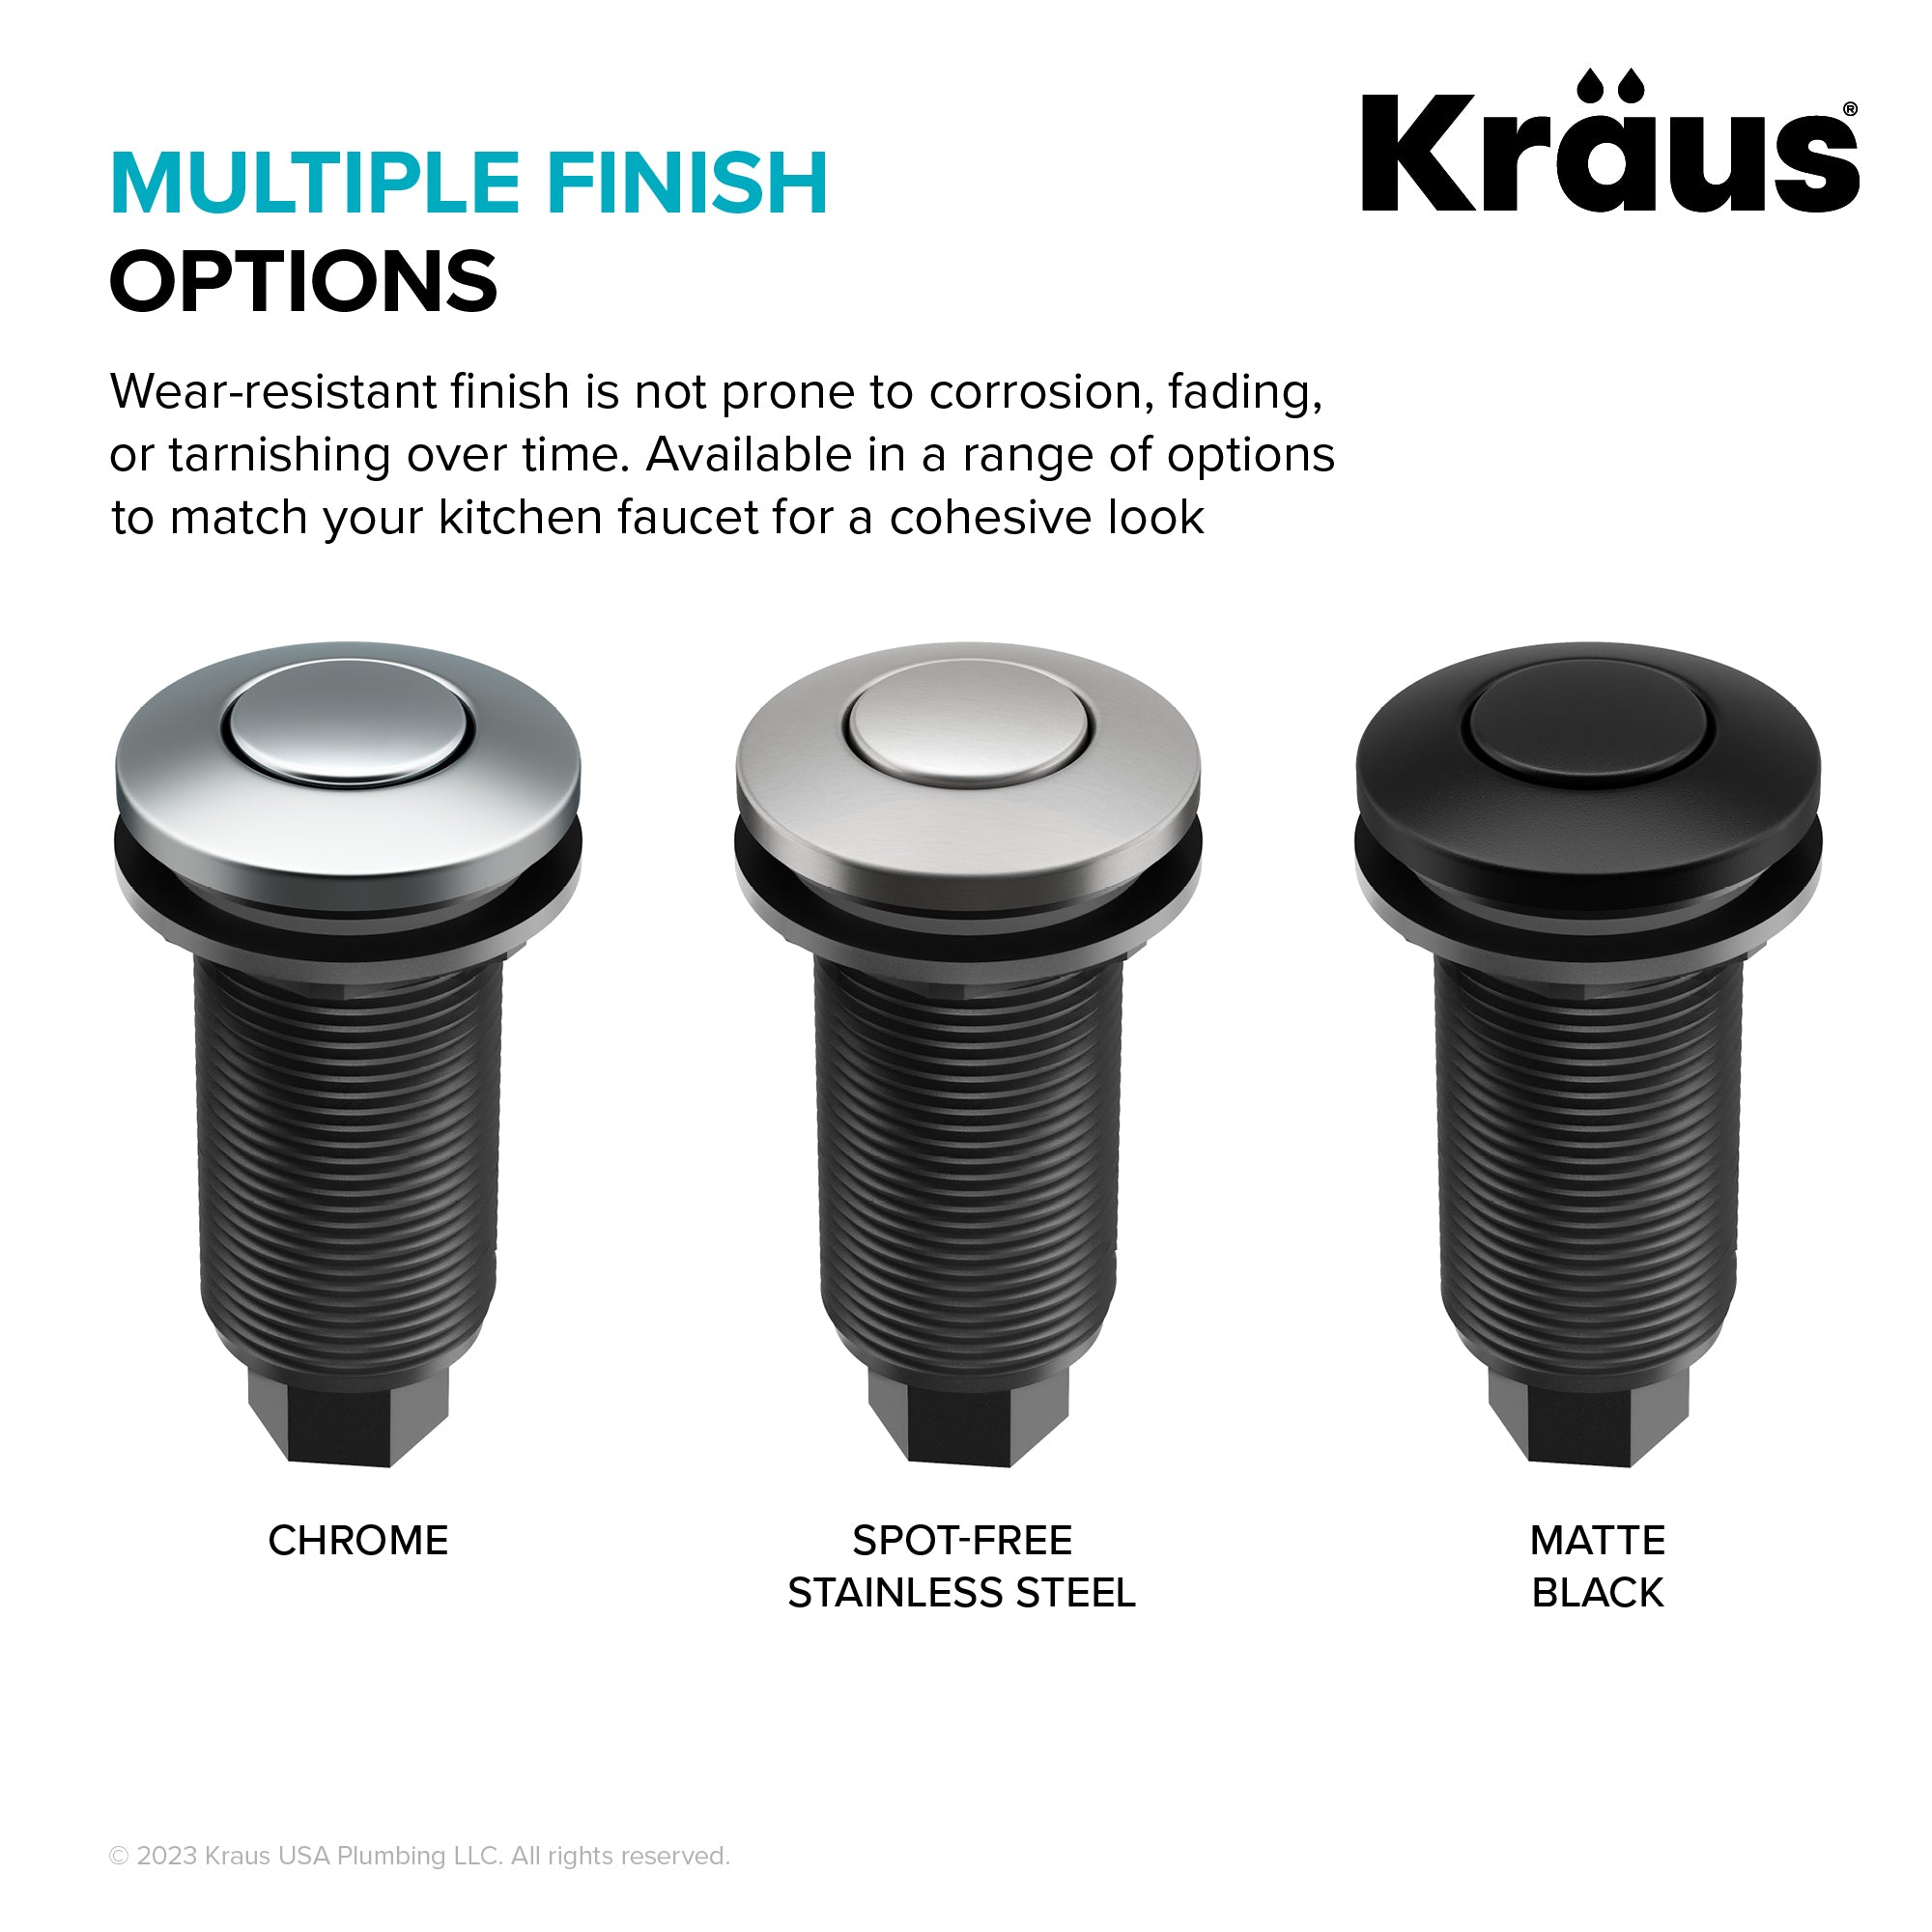 KRAUS Garbage Disposal Push Button Air Switch Kit in Chrome